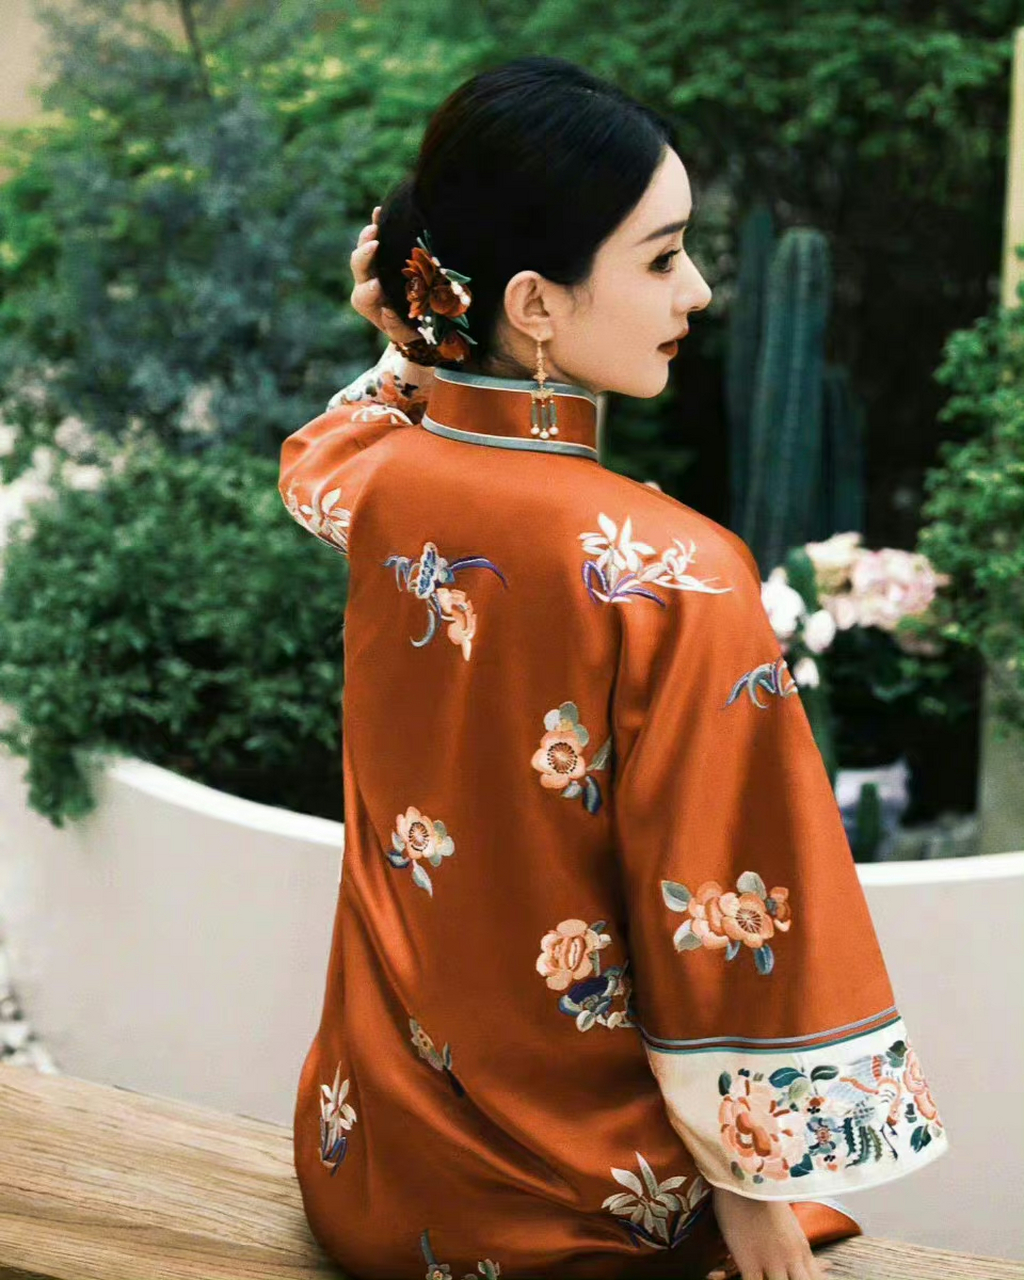 赵丽颖红色旗袍造型太美了,端庄大方,很有传统文化的节日的气息!